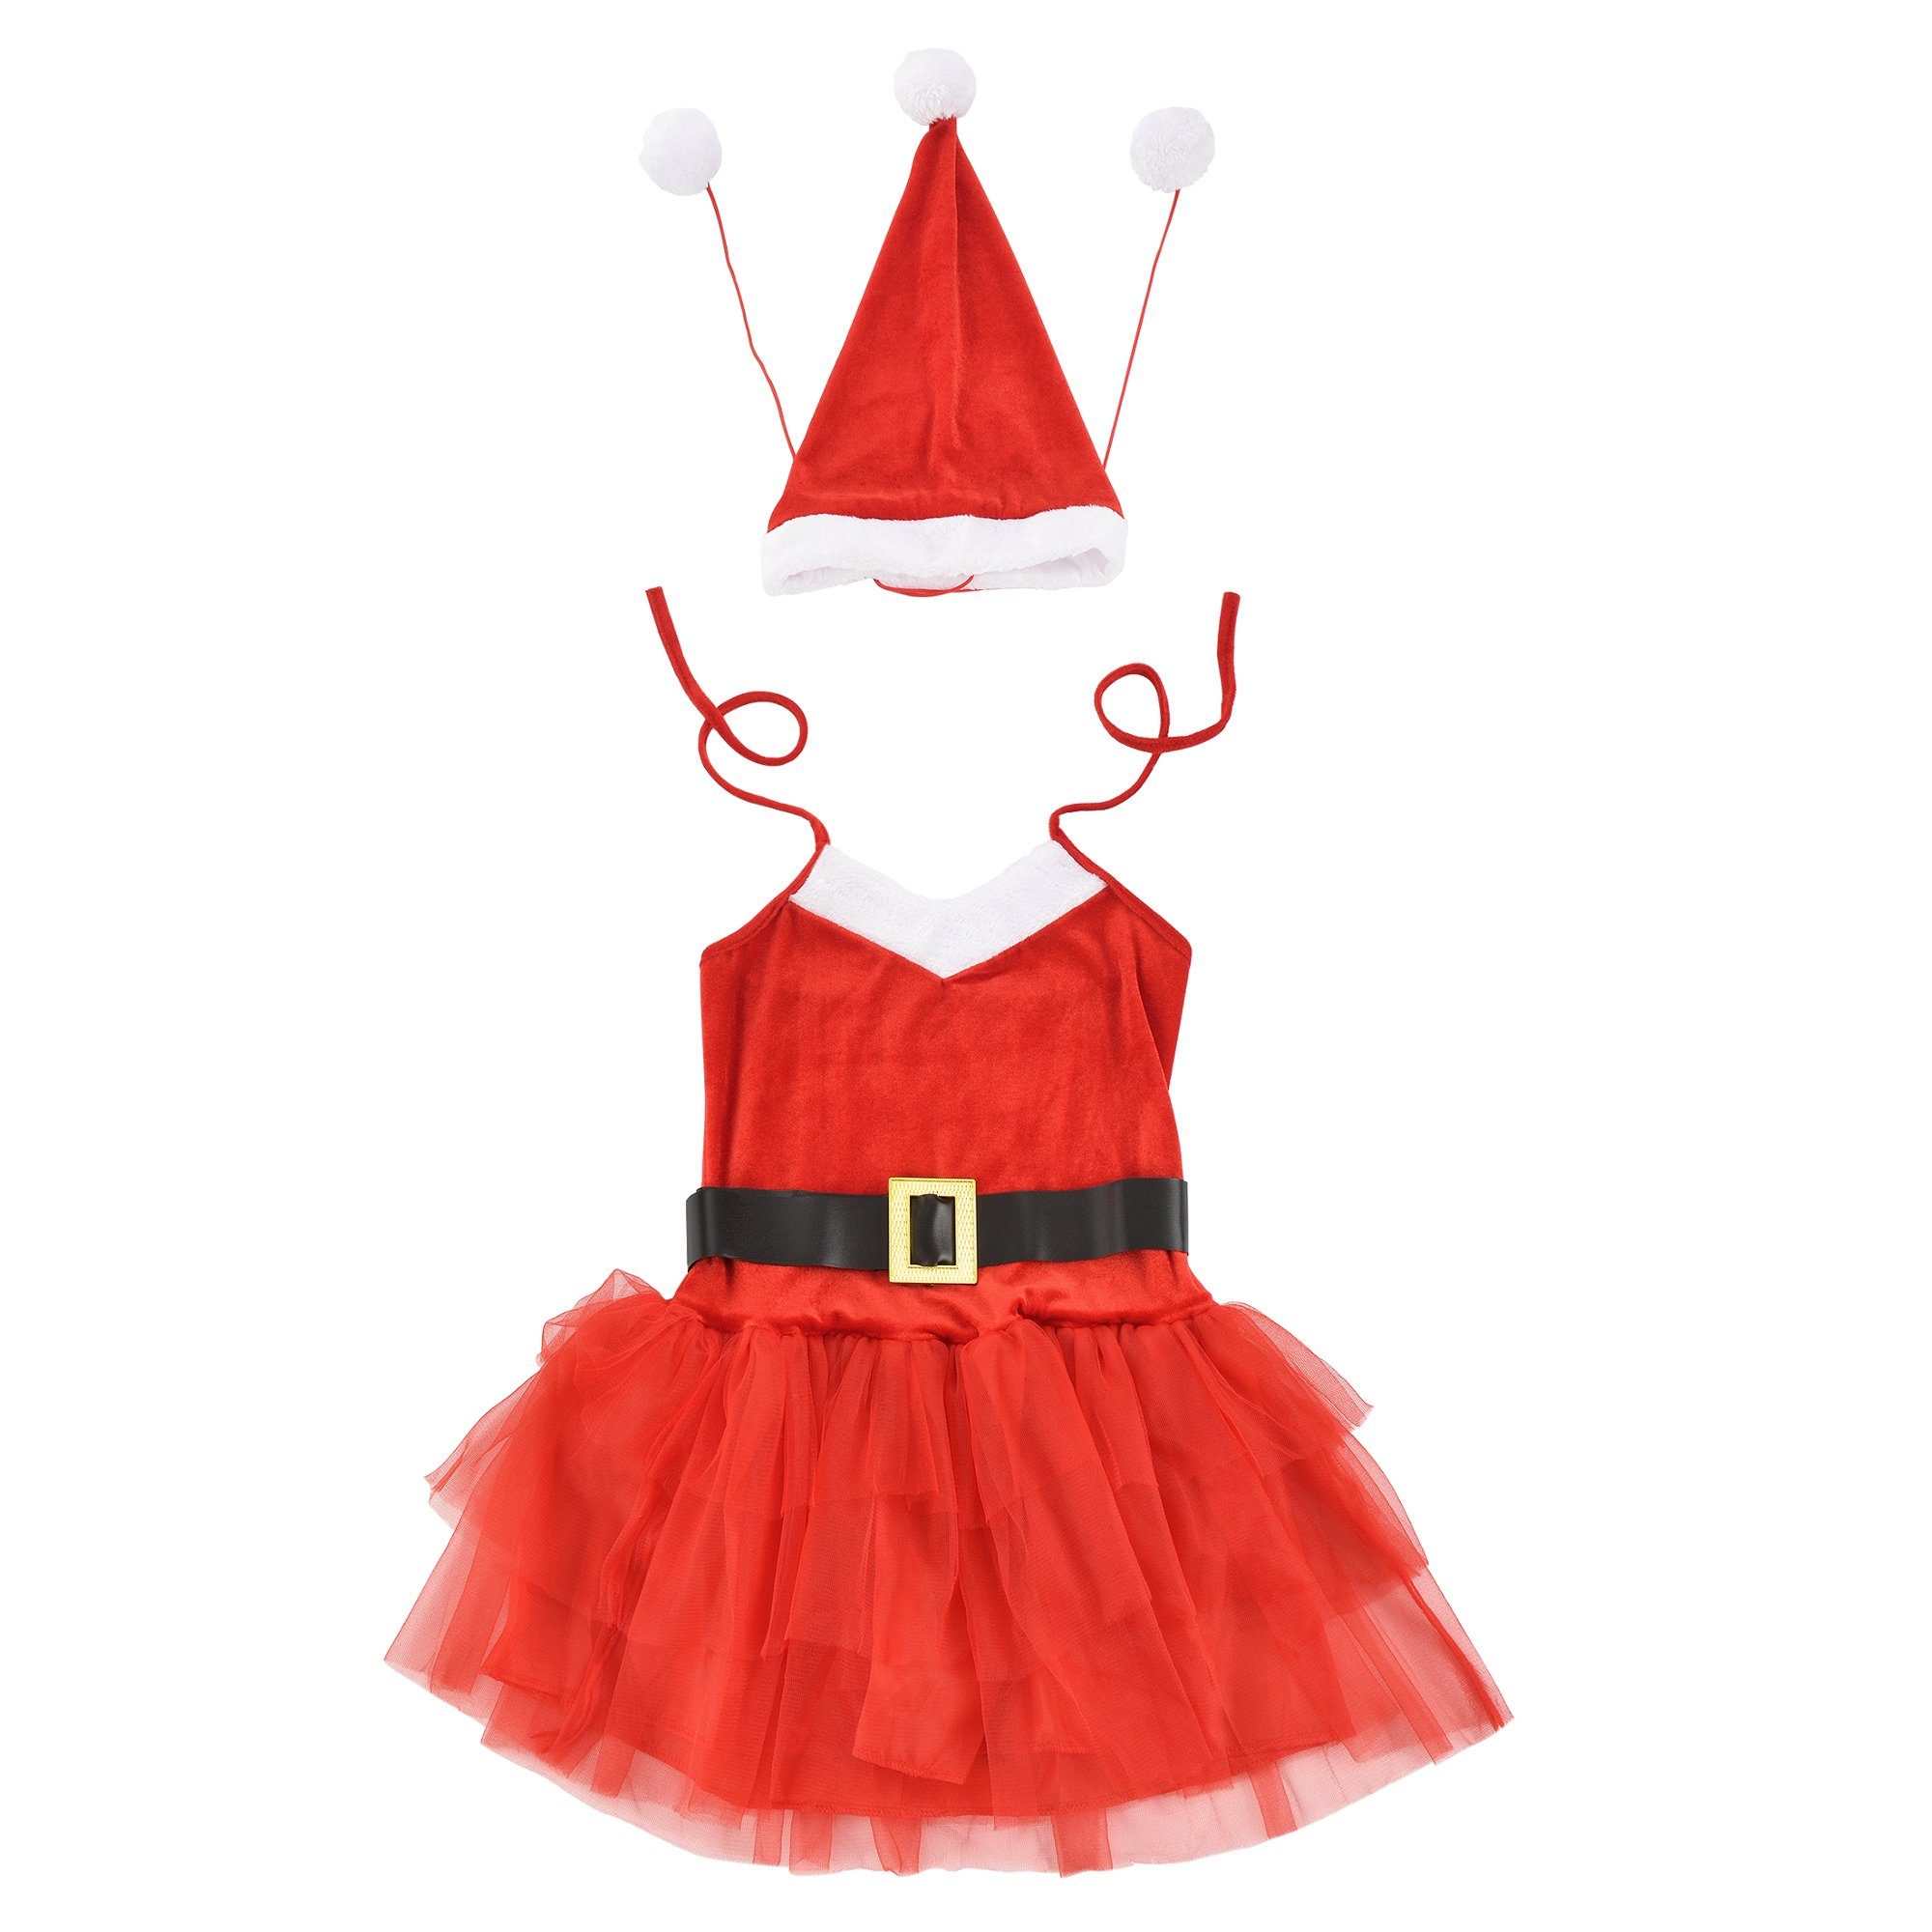 en.casa Kostüm, Weihnachtskostüm Weihnachten Party Nikolaus Outfit Kleid  Xmas für Frauen Damen online kaufen | OTTO